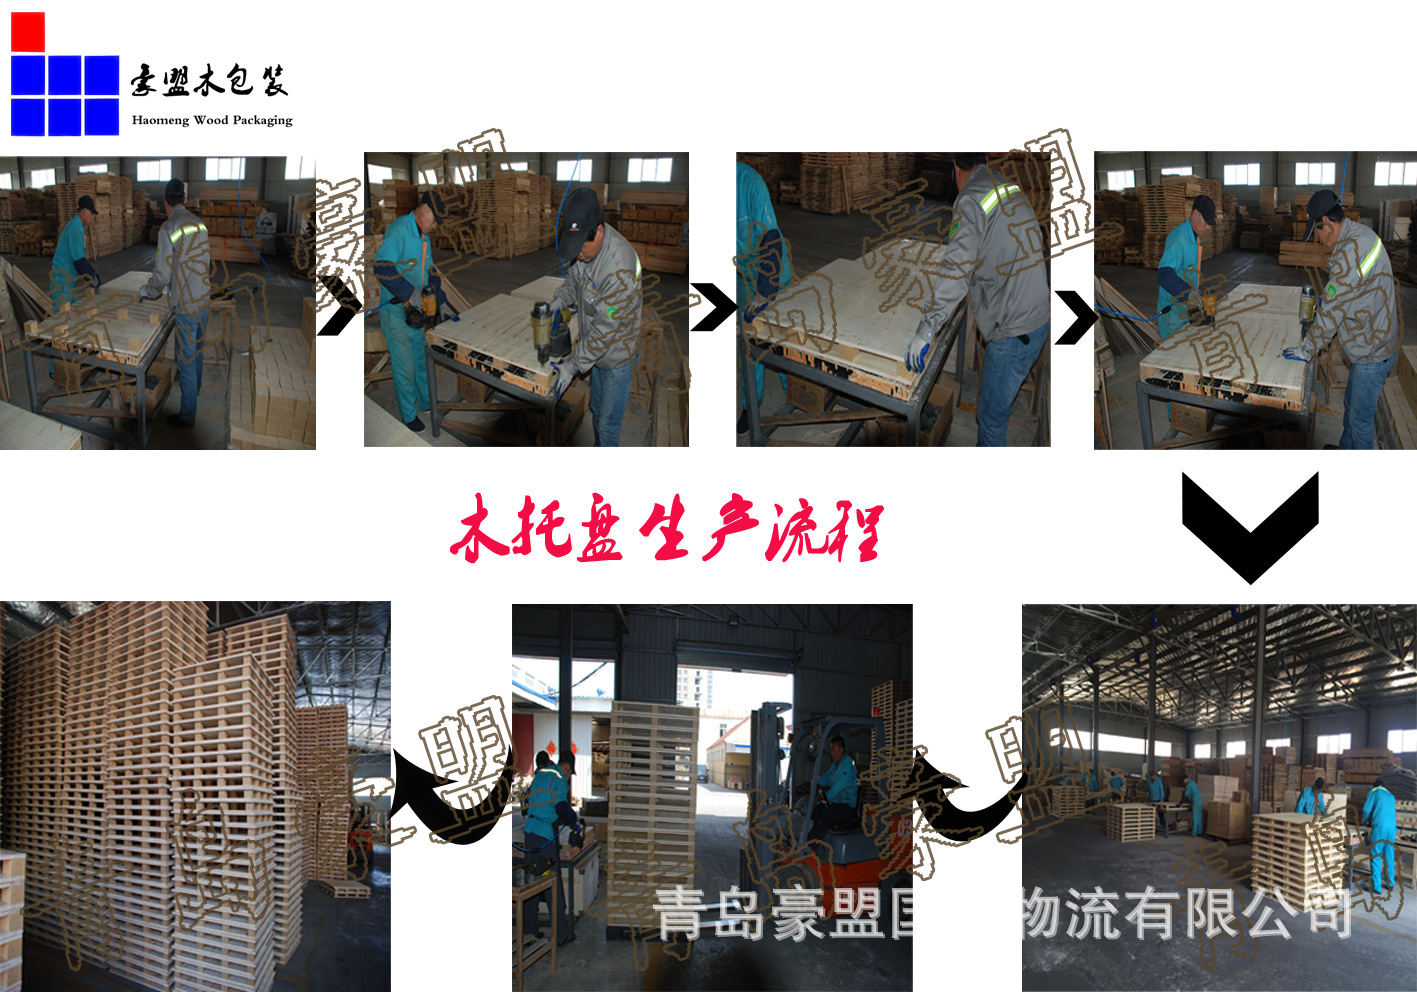 城阳空港工业园附近胶合板定做尺寸木托盘 出口示例图5